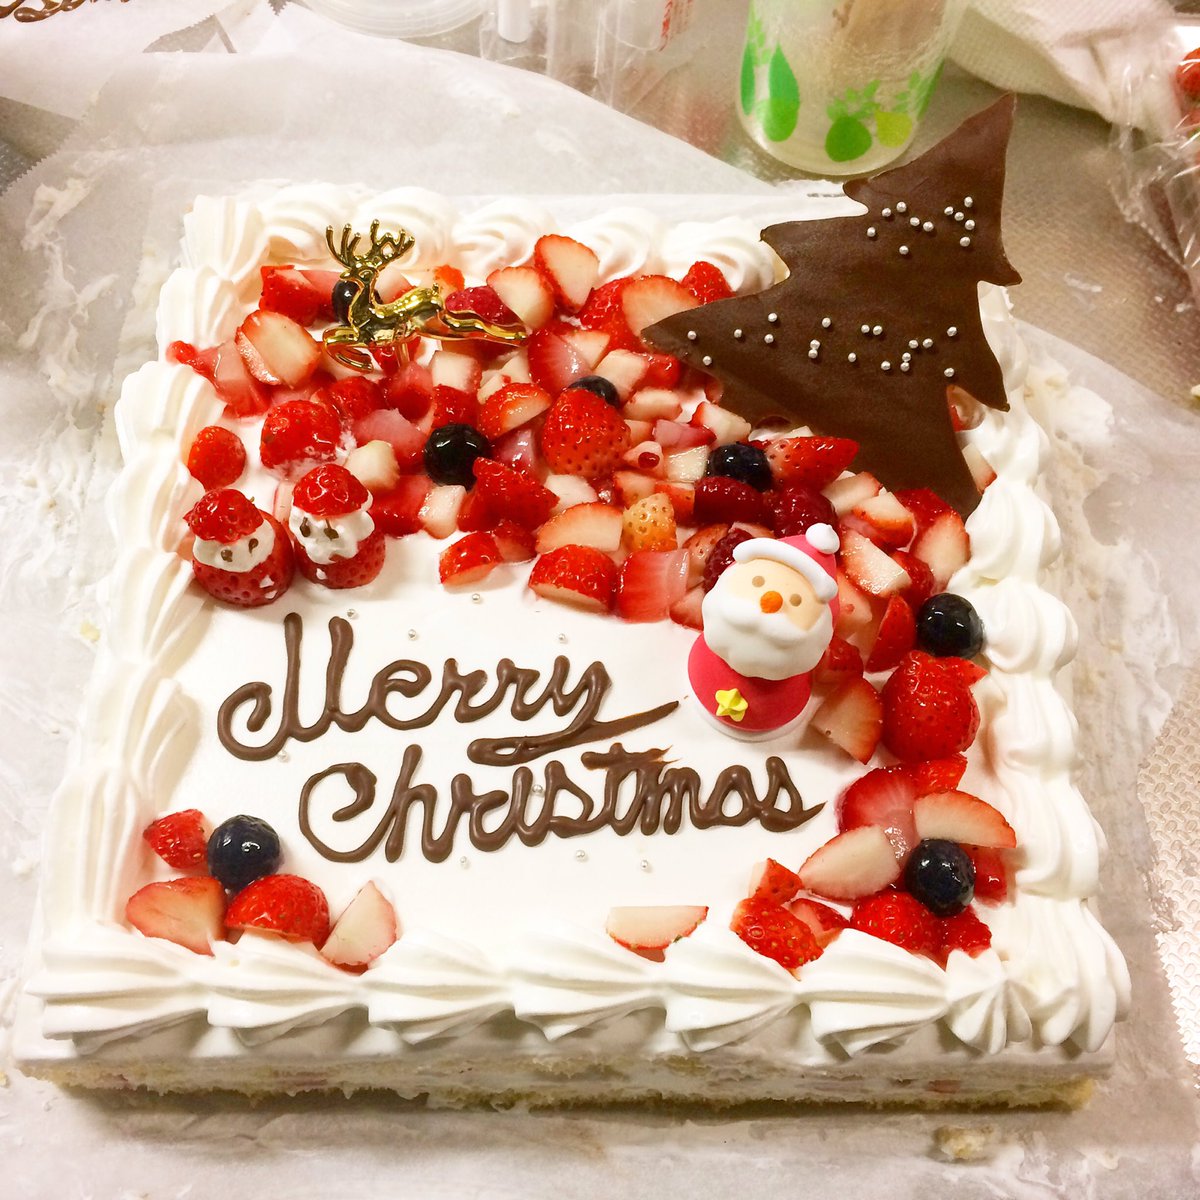 ｽｲｰﾂ男子もりりん Pa Twitter クリスマスが近づき 学校にクリスマスケーキを 絞りはだいぶ良くなってきましたが文字の部分を失敗しました 明日は友達のカップルの為にワンホール作ります クリスマスくりえいてぃ部 お菓子作り お菓子作り